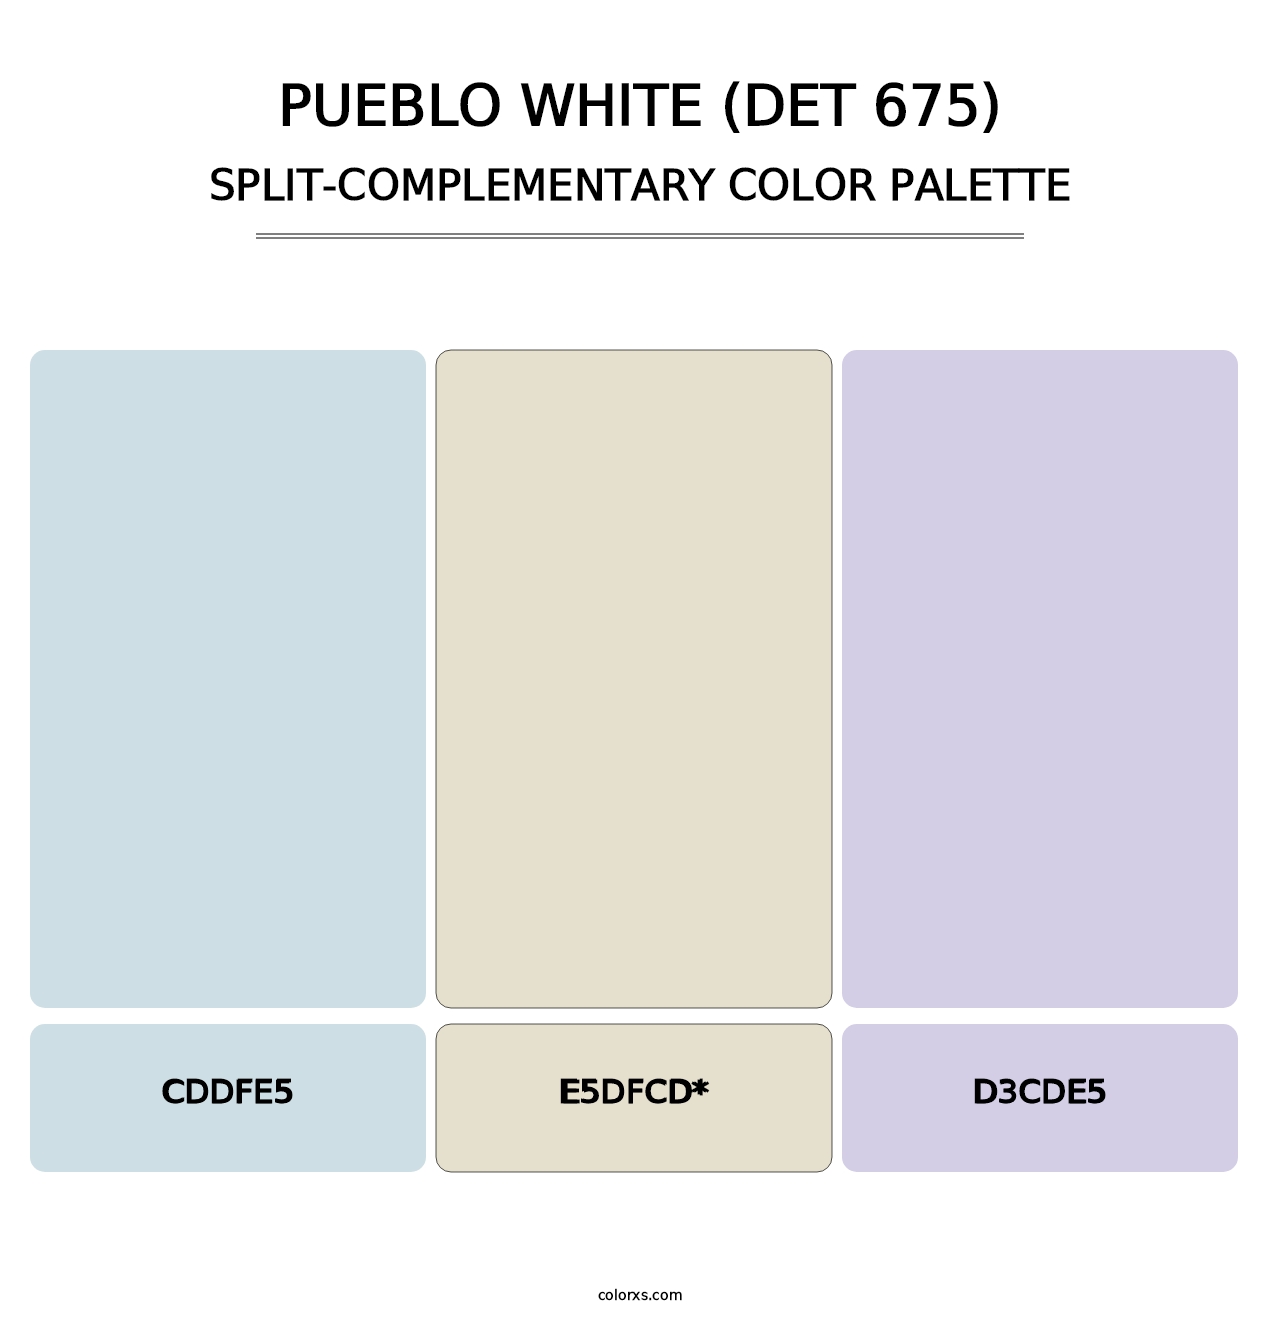 Pueblo White (DET 675) - Split-Complementary Color Palette